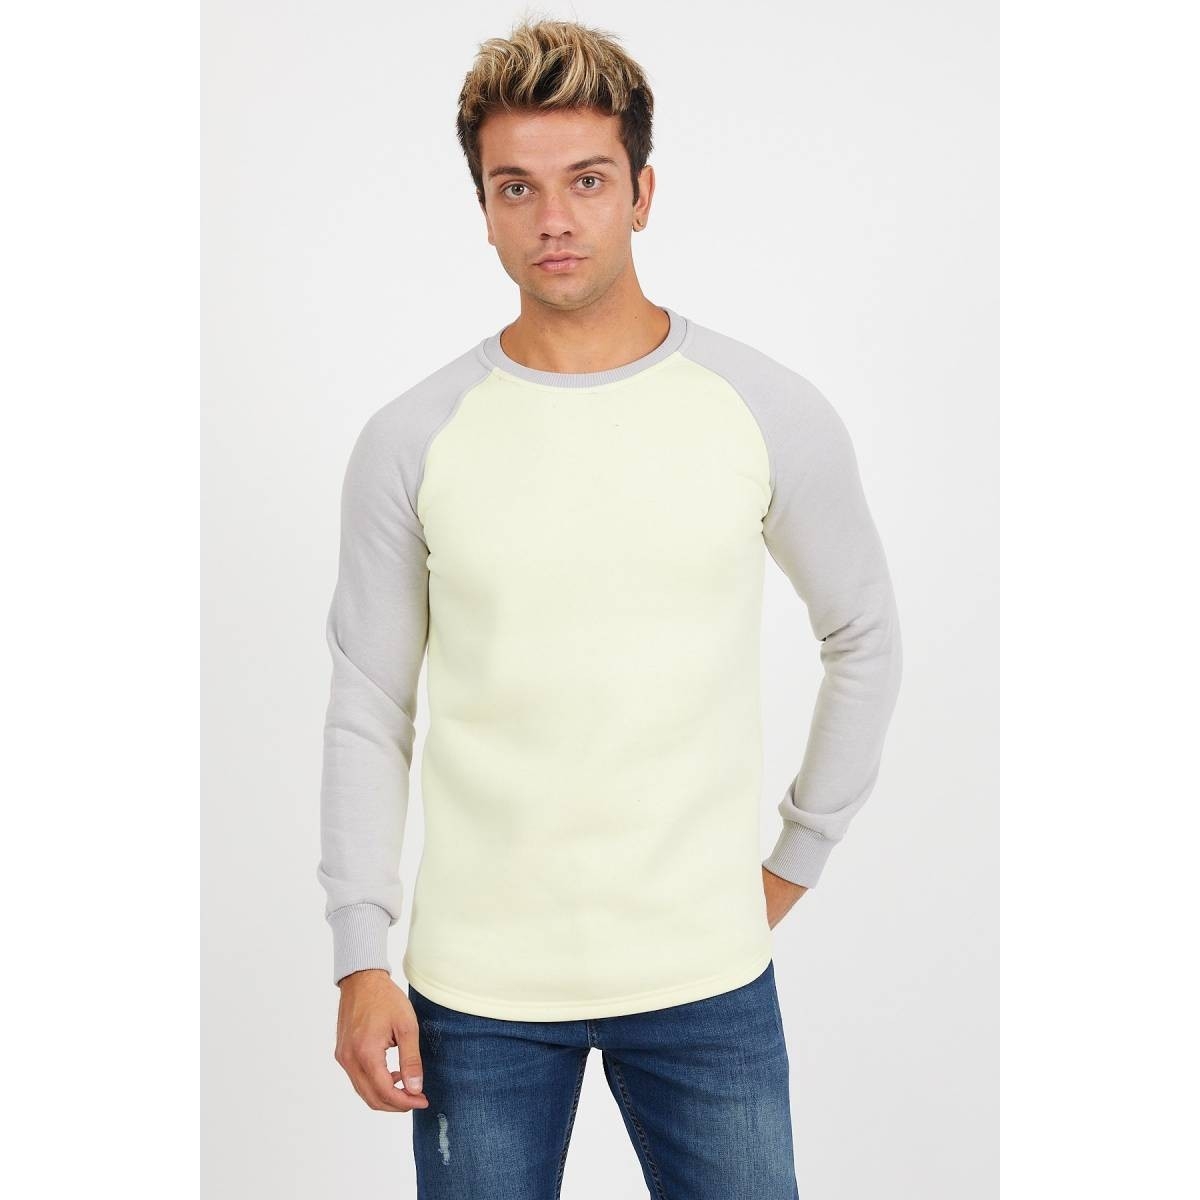 Flo Erkek Reglan Kol Sarı Sweatshirt - 61029. 3